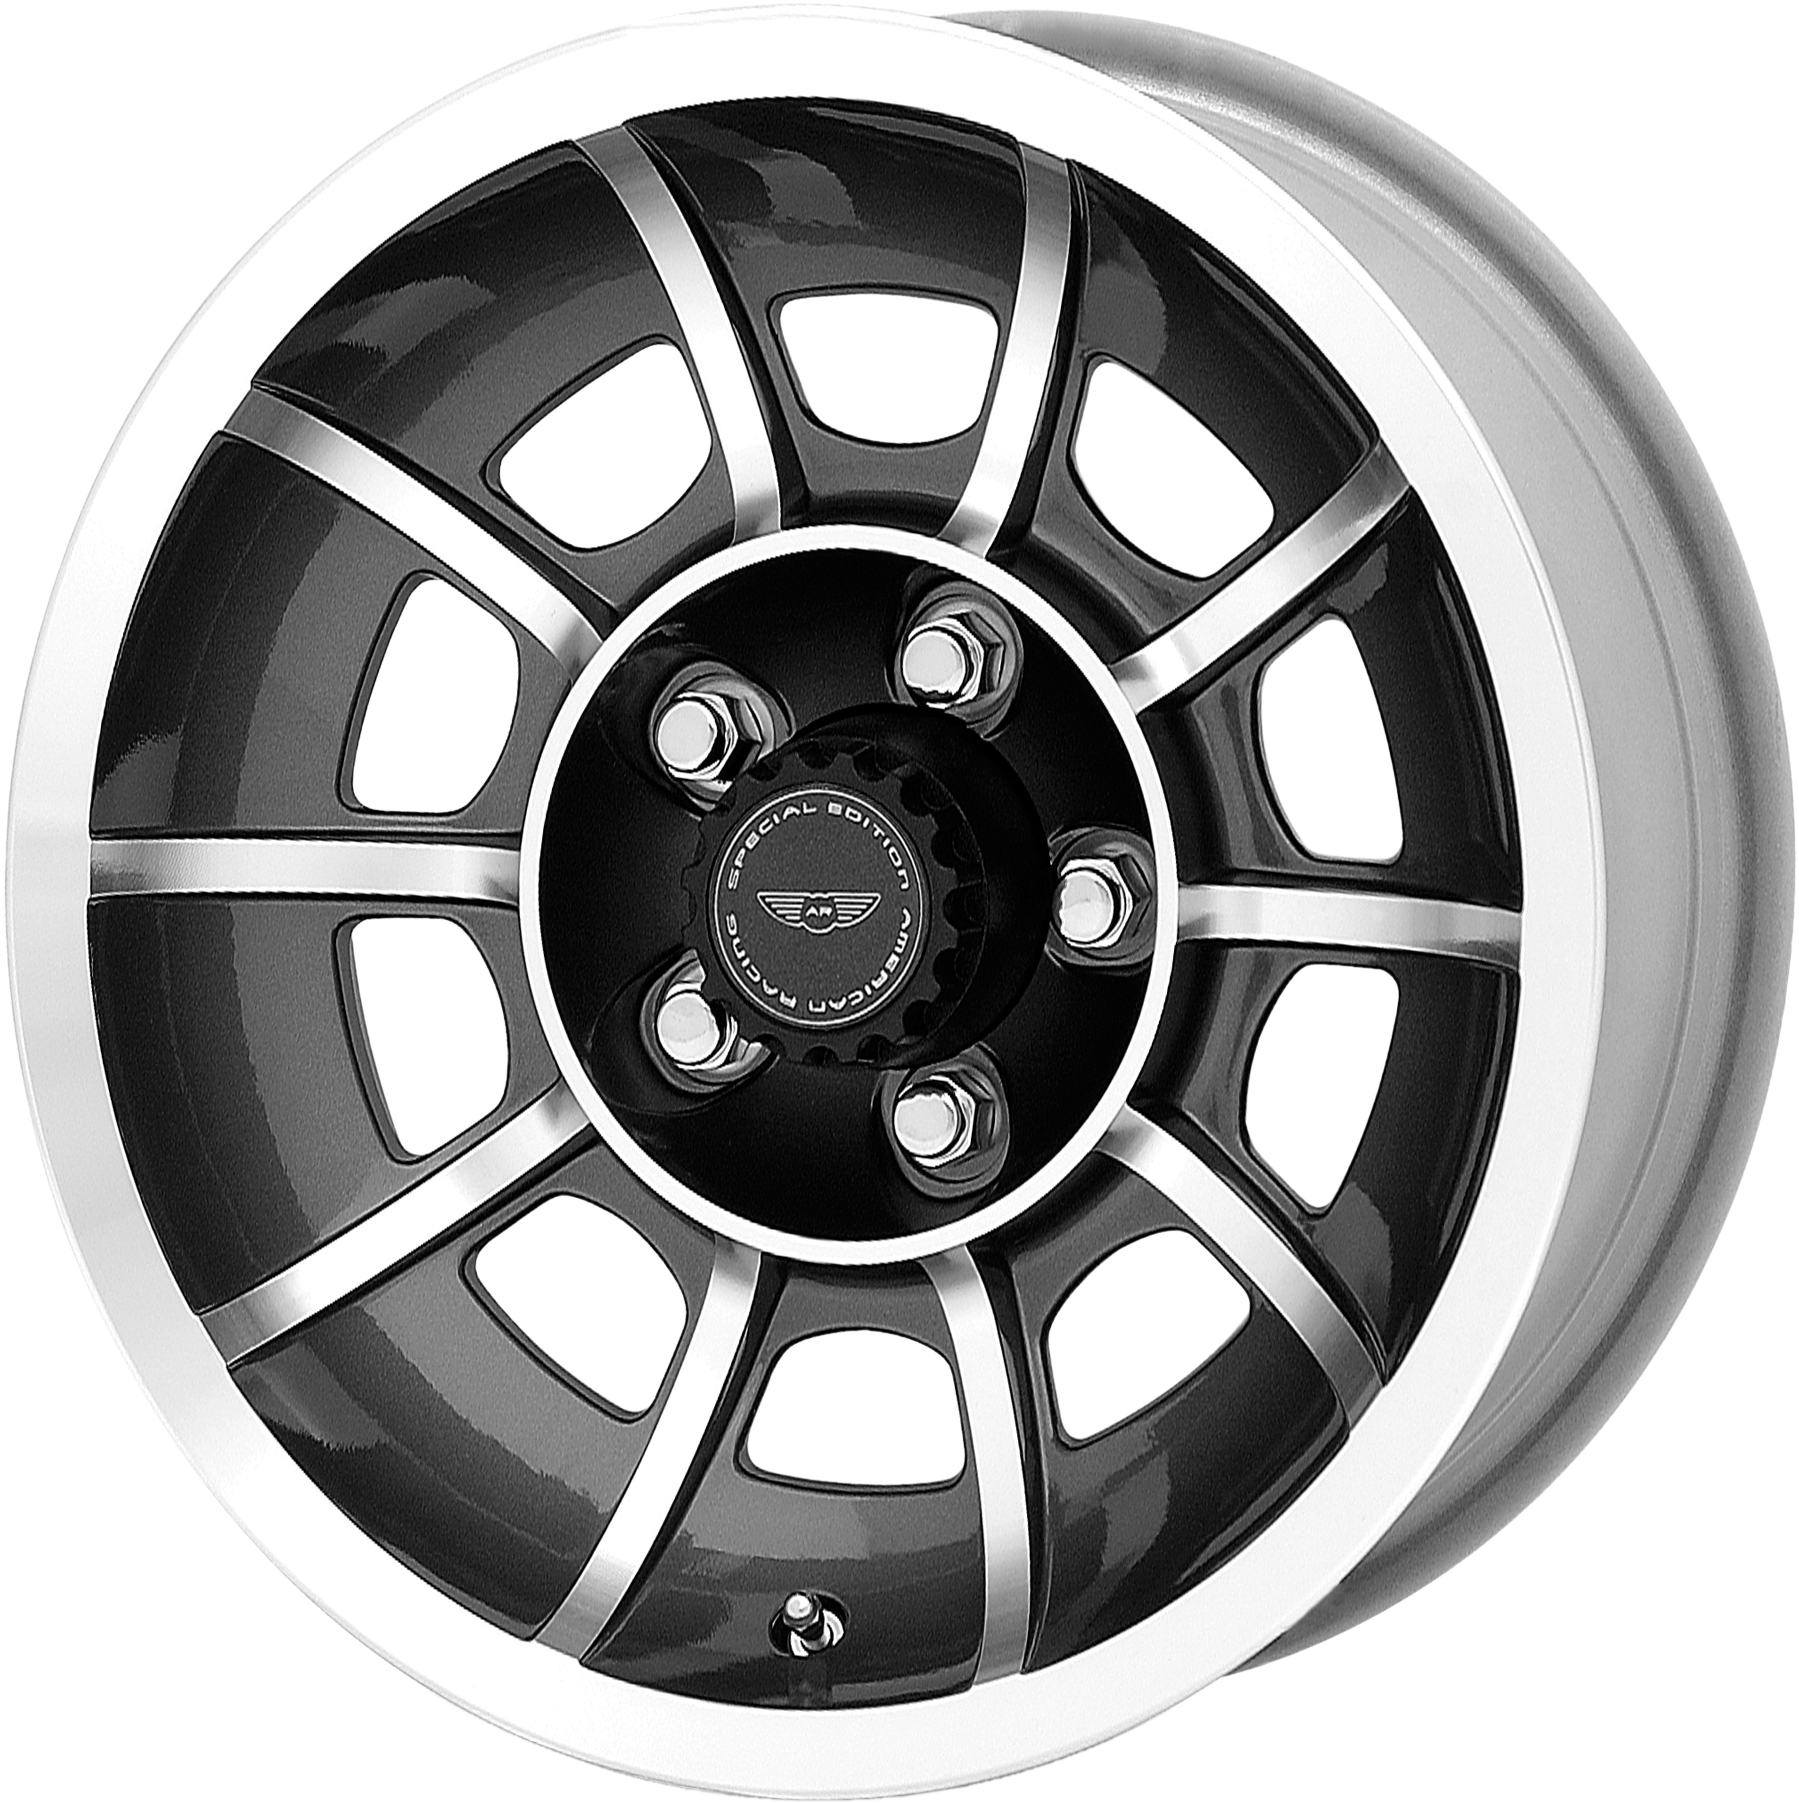 American Racing Vector Wheels (750x750), Png Download